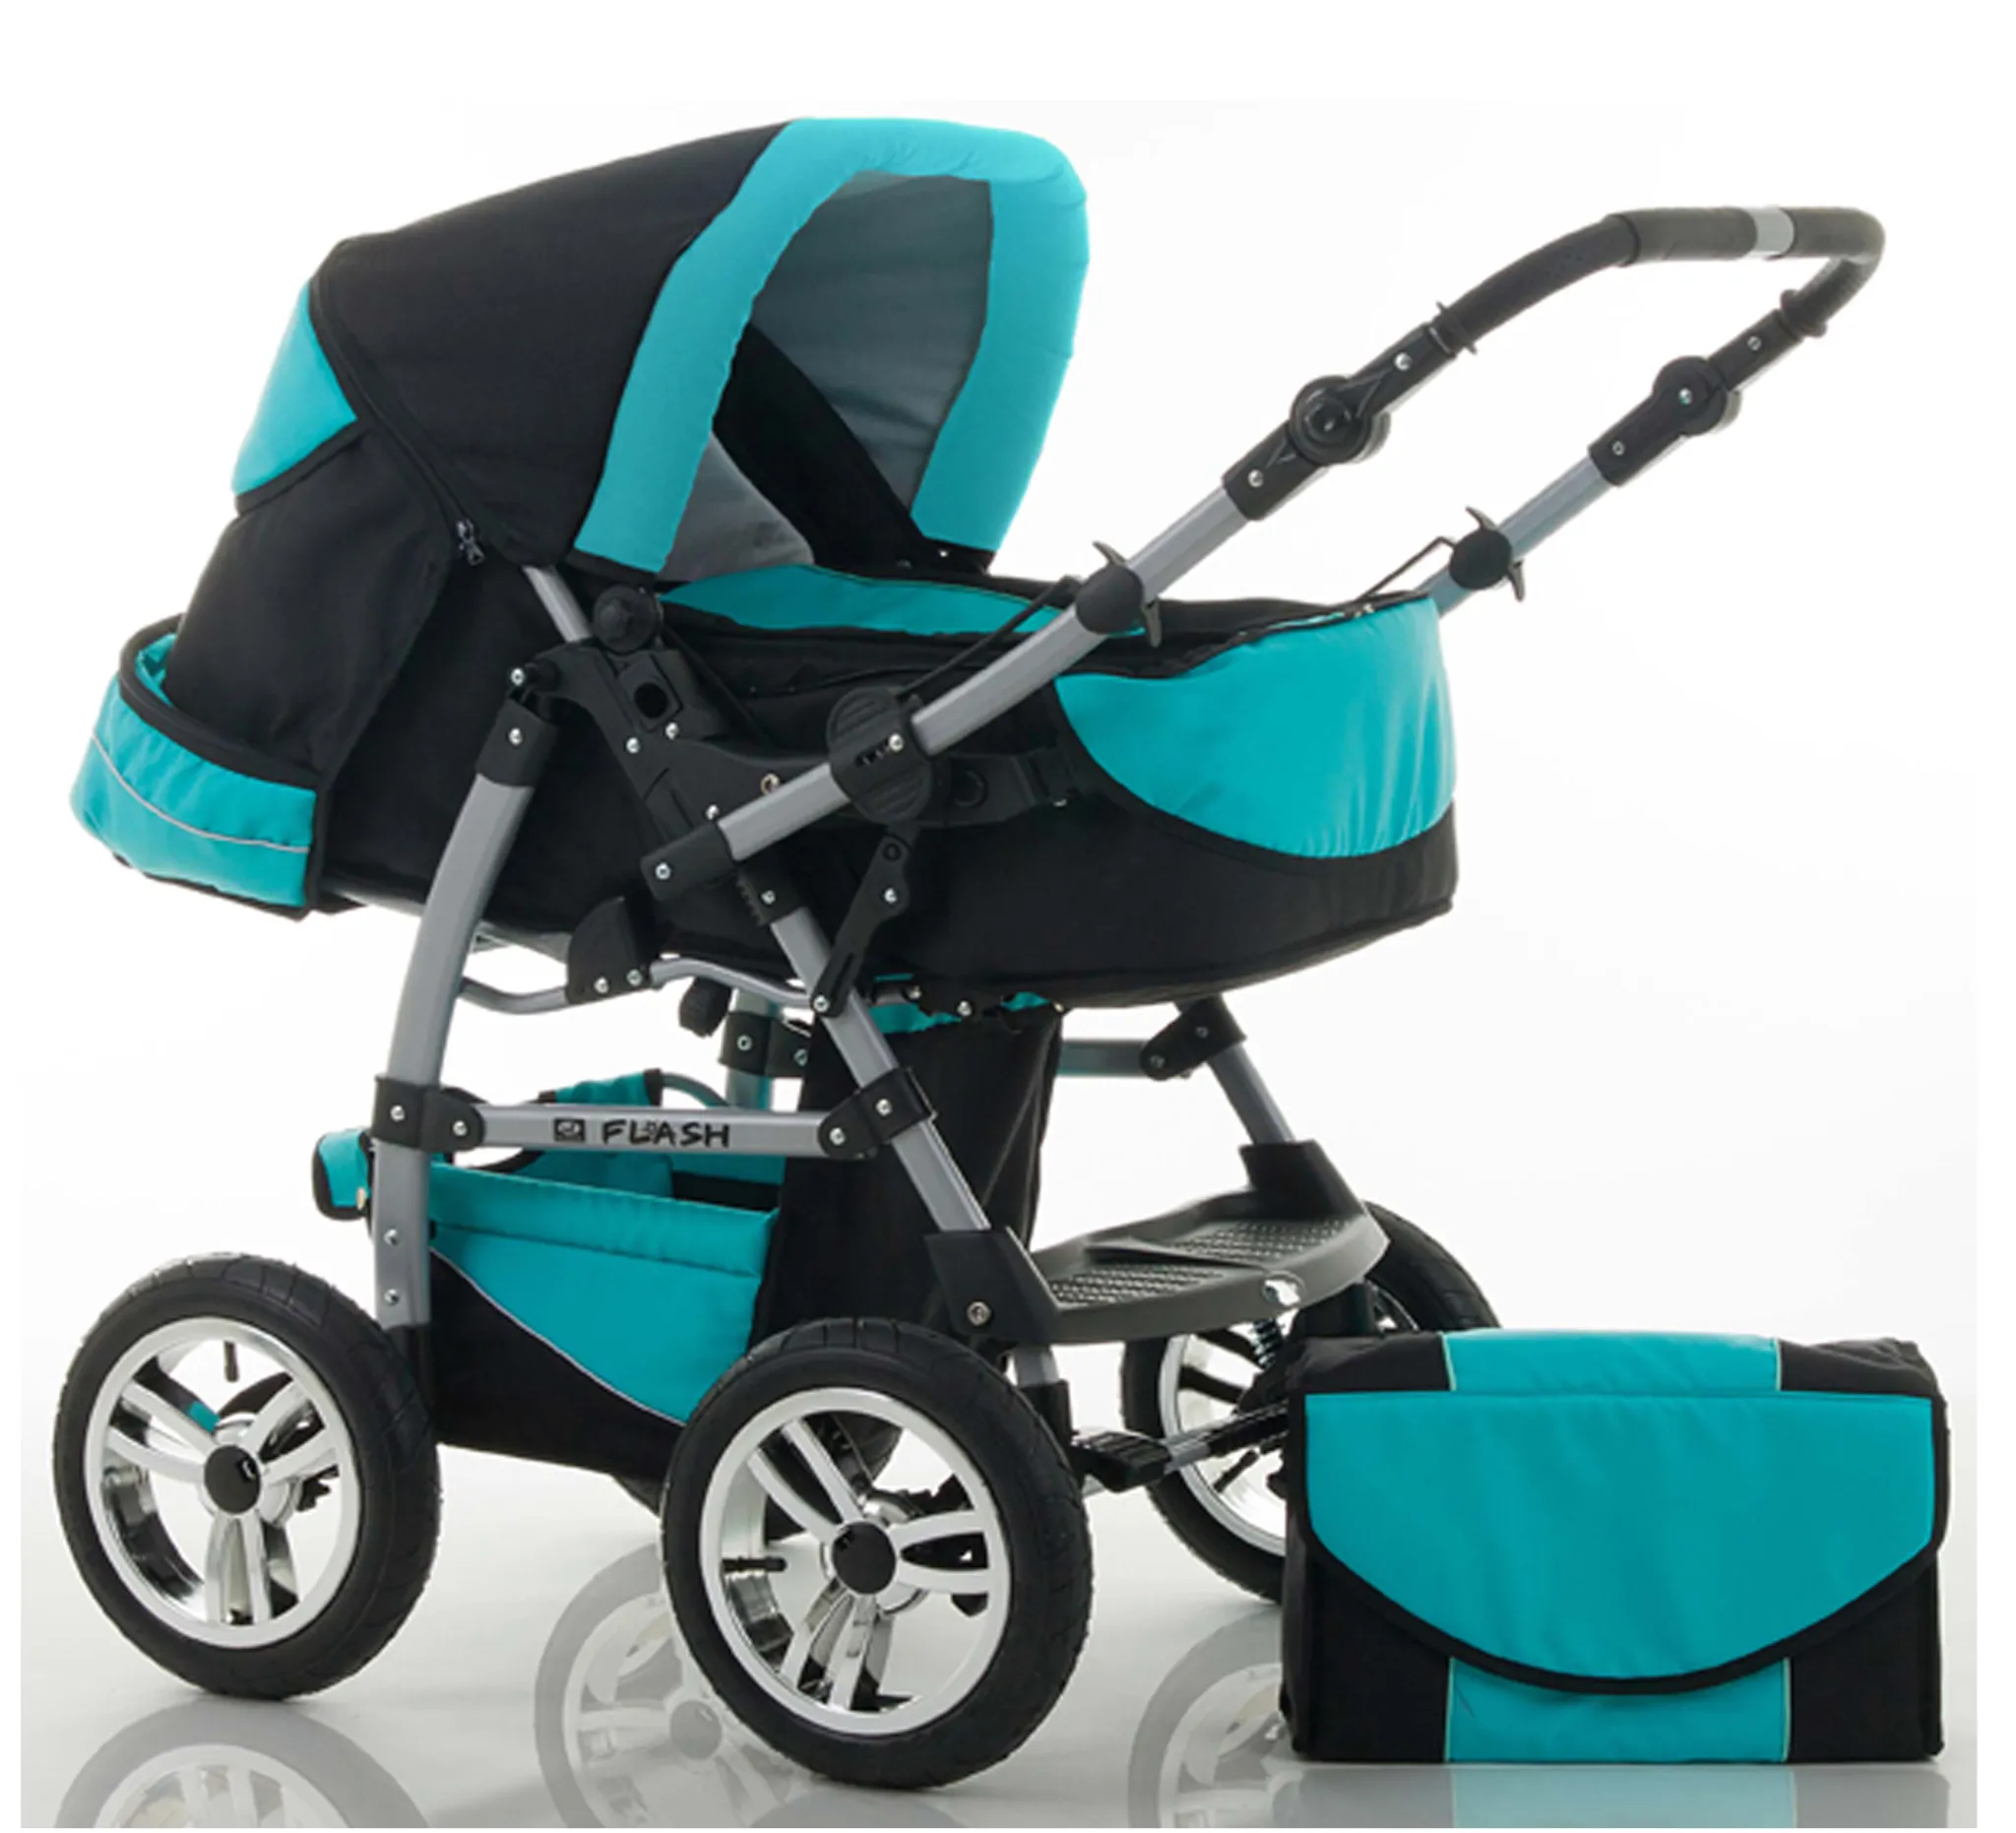 Babyreisekissen für Kinderwagen oder Bett,2 in 1 Kinderwagen Kinderwagen Soft Head Neck Support Verstellbares Baby Travel Nackenkissen für 3 Monate bis 1 Jahr Baby（Grey 1） 